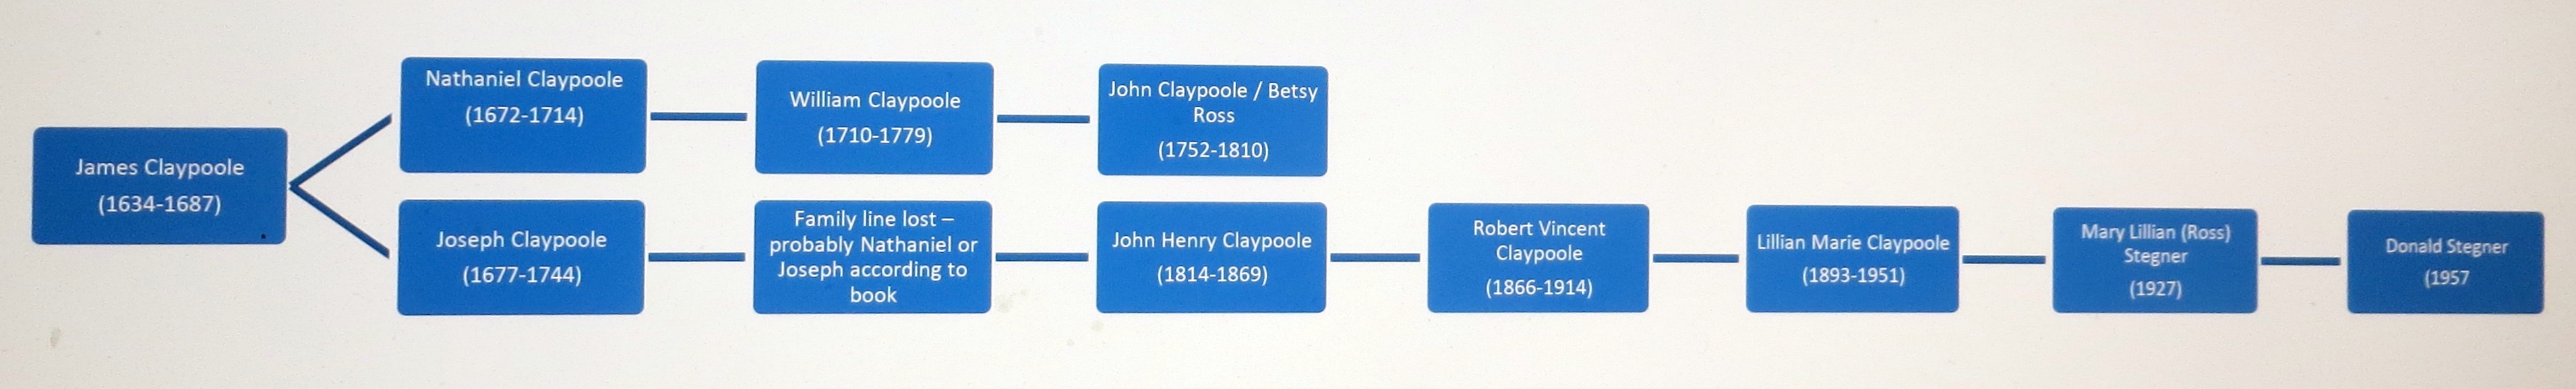 claypoole family tree